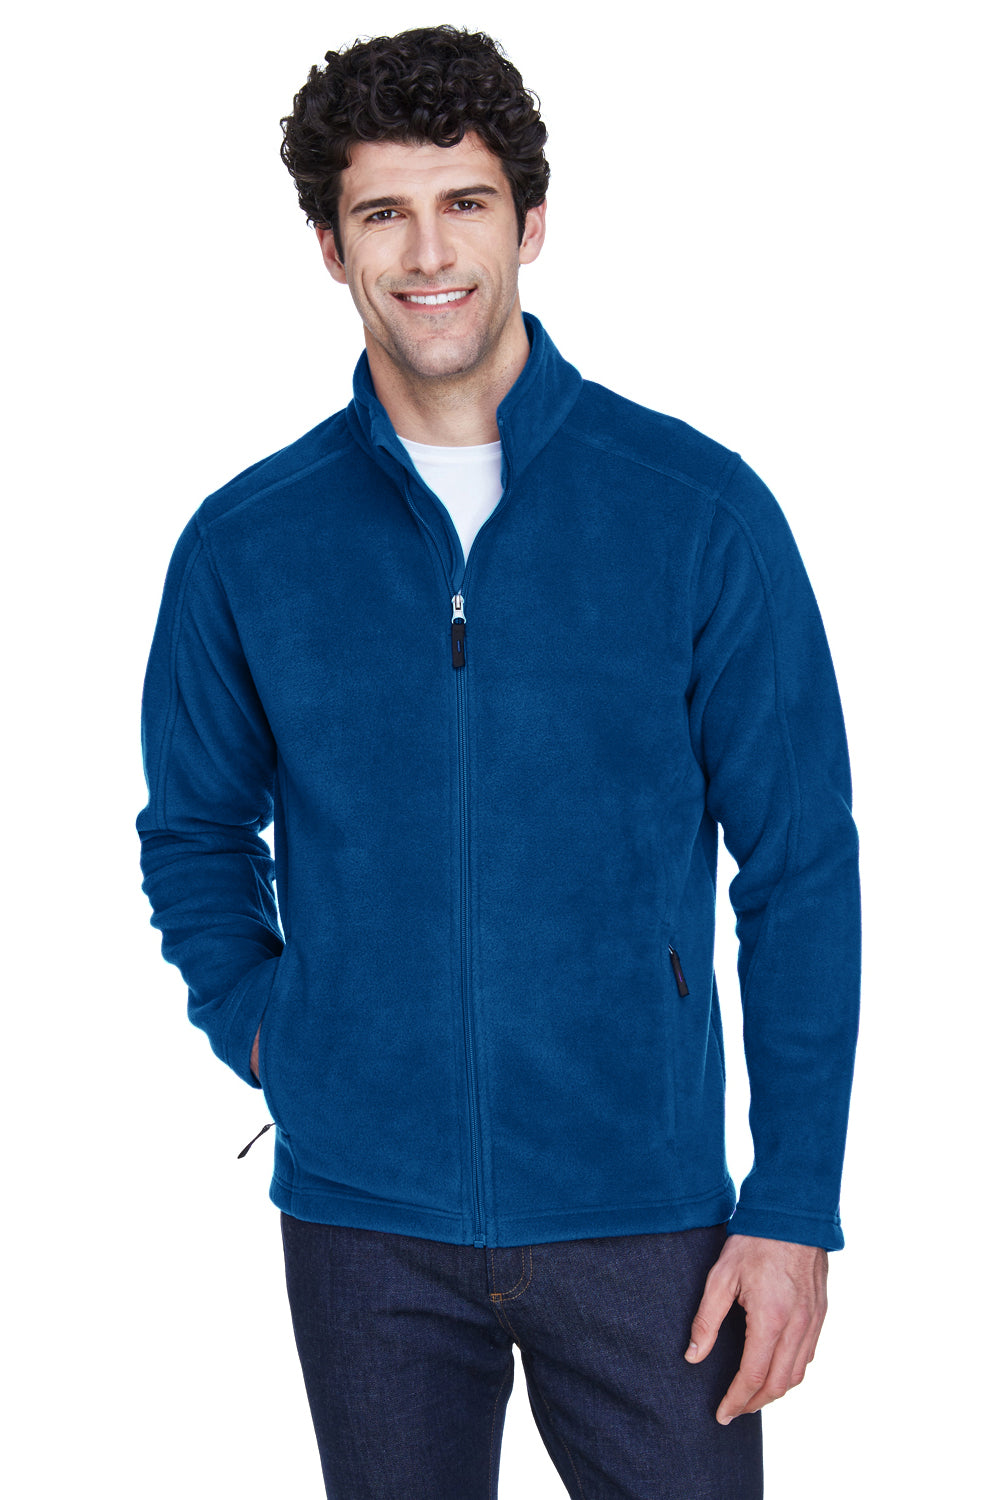 Core 365 Mens Journey Full Zip Fleece Jacket 88190 - BigTopShirtShop.com